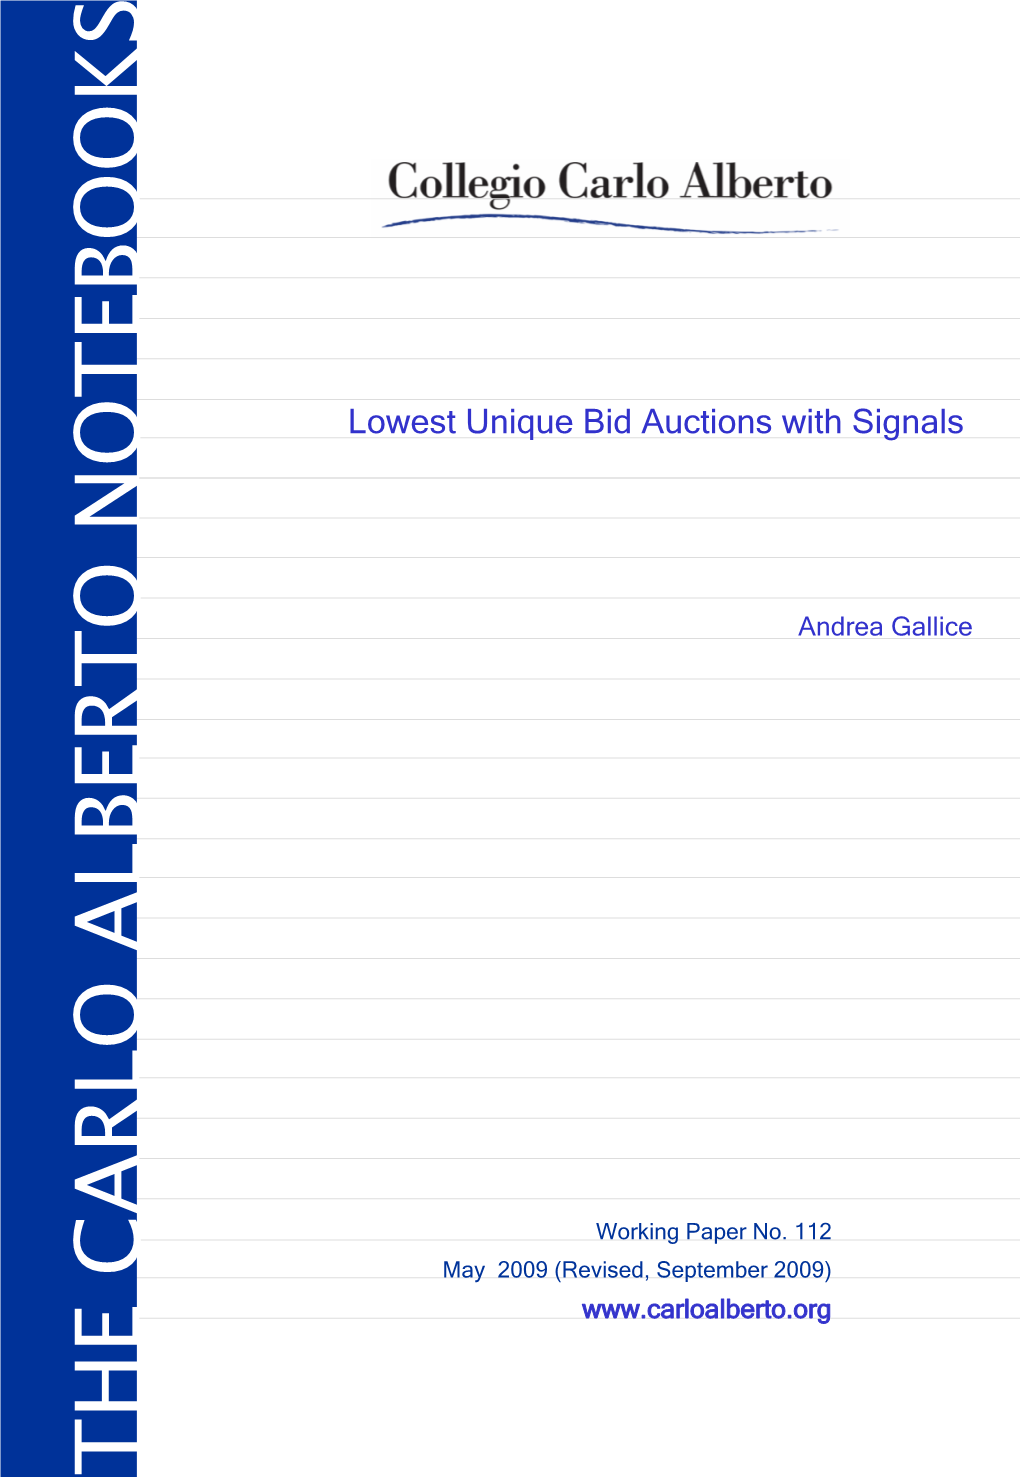 Lowest Unique Bid Auctions with Signals